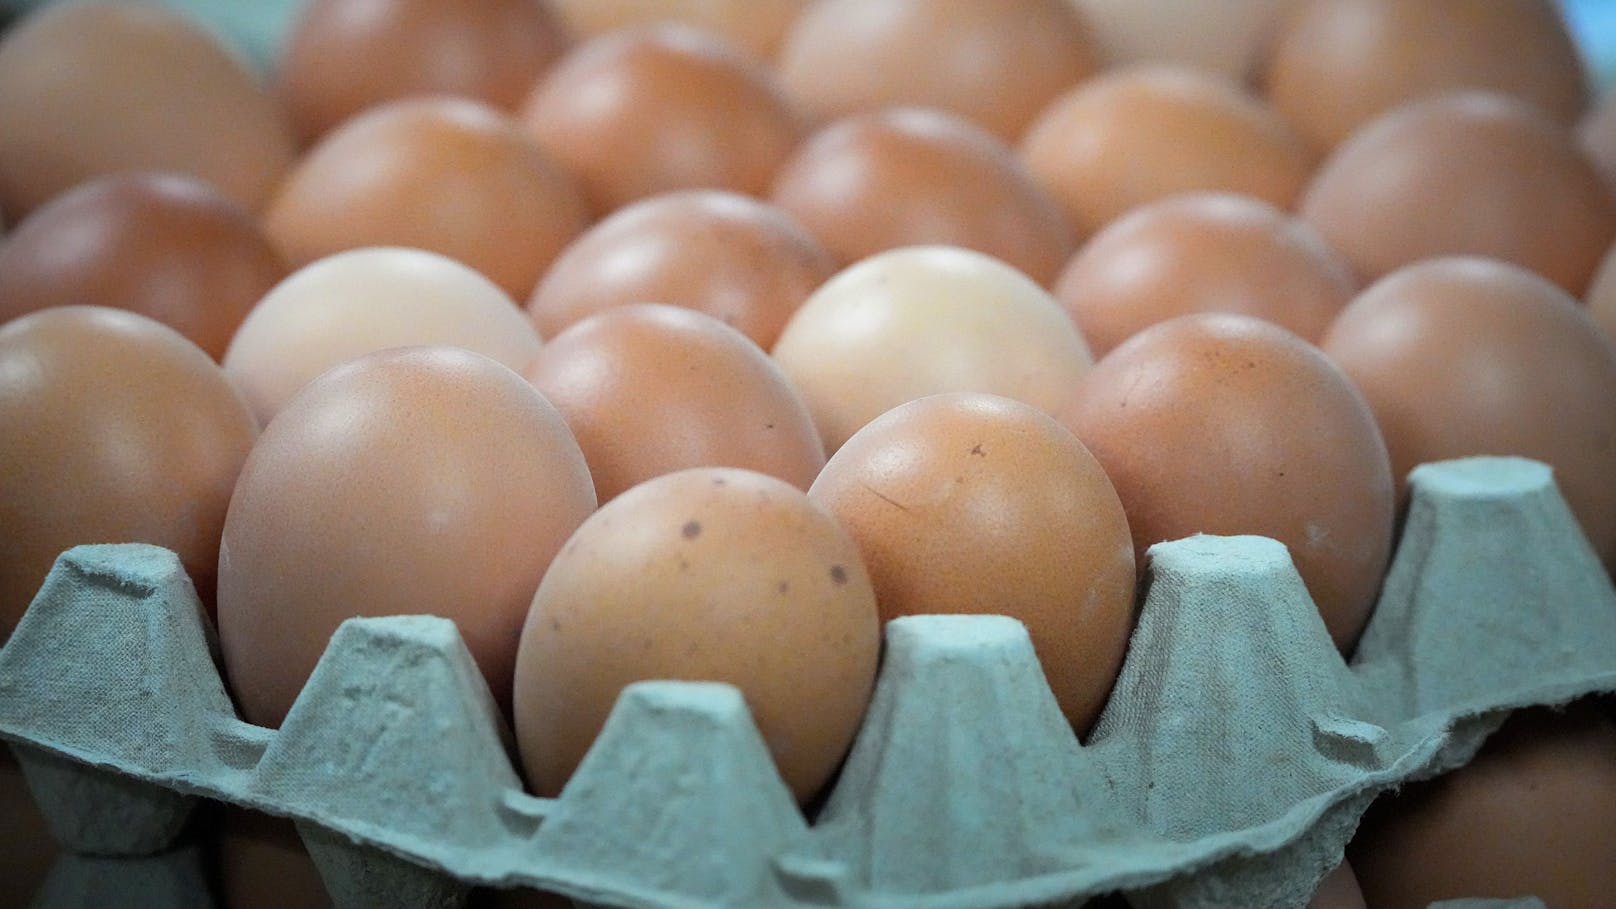 Veränderung im Handel – diese Eier stehen vor dem Aus